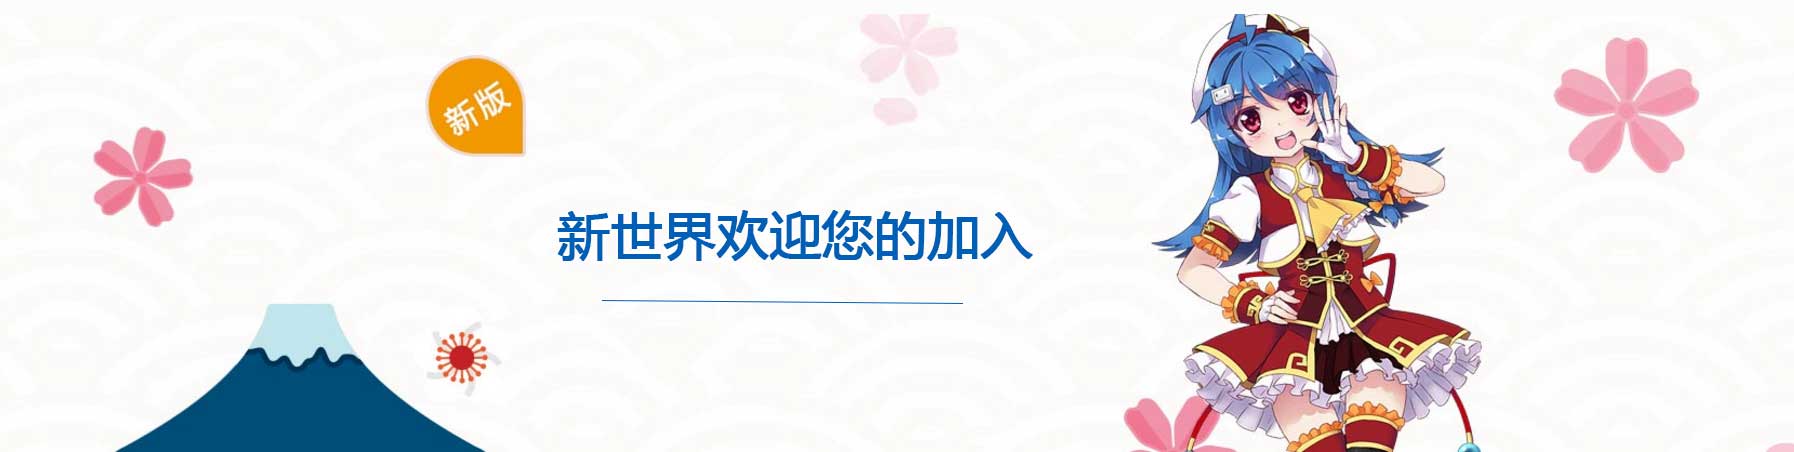 郑州市日语学习班--新世界欢迎您的加入